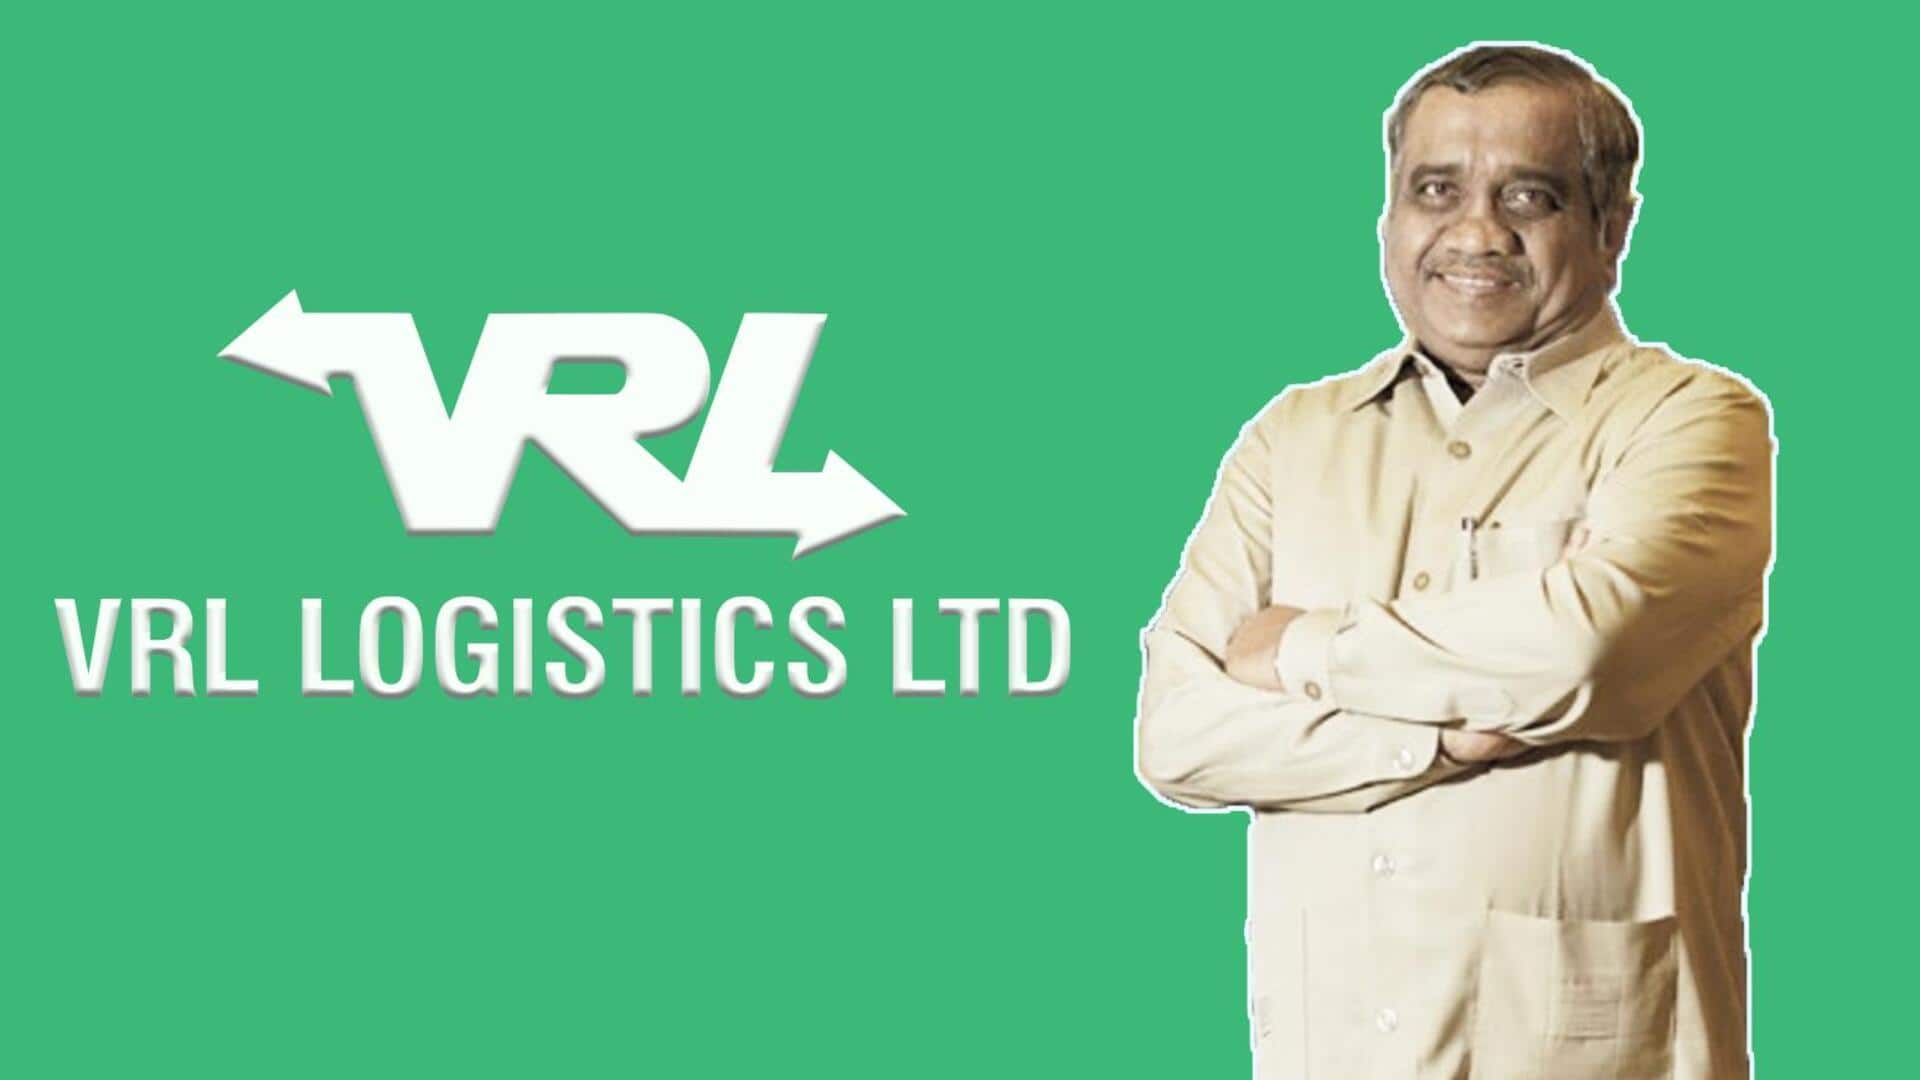 विजय संकेश्वर ने उधार लेकर शुरू की VRL लॉजिस्टिक्स कंपनी, आज इतनी है उनकी संपत्ति